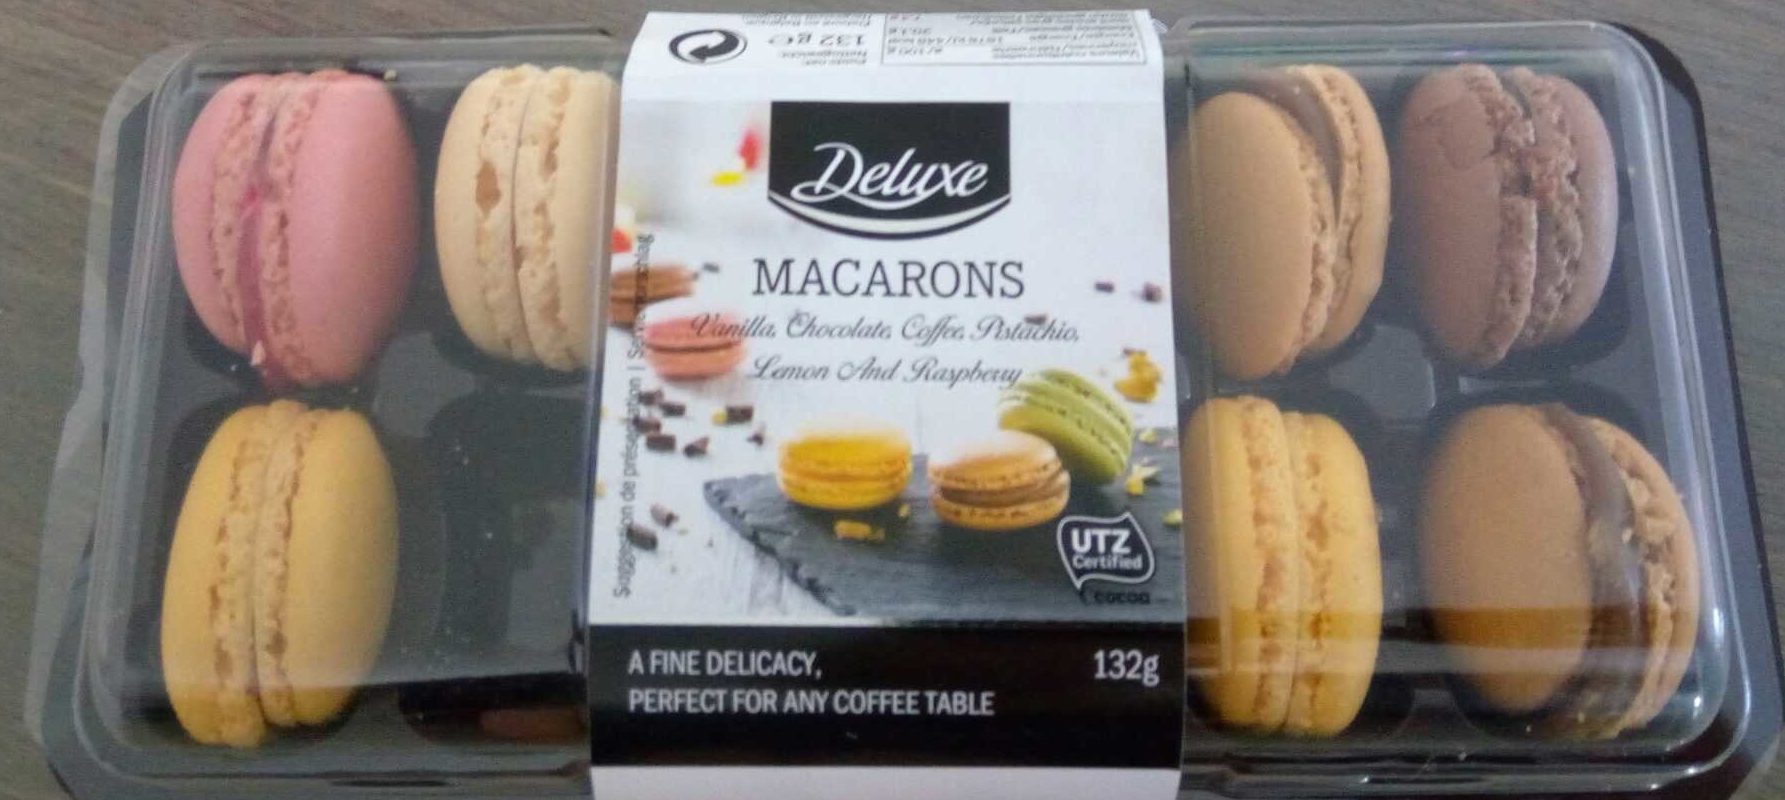 Lidl macarons